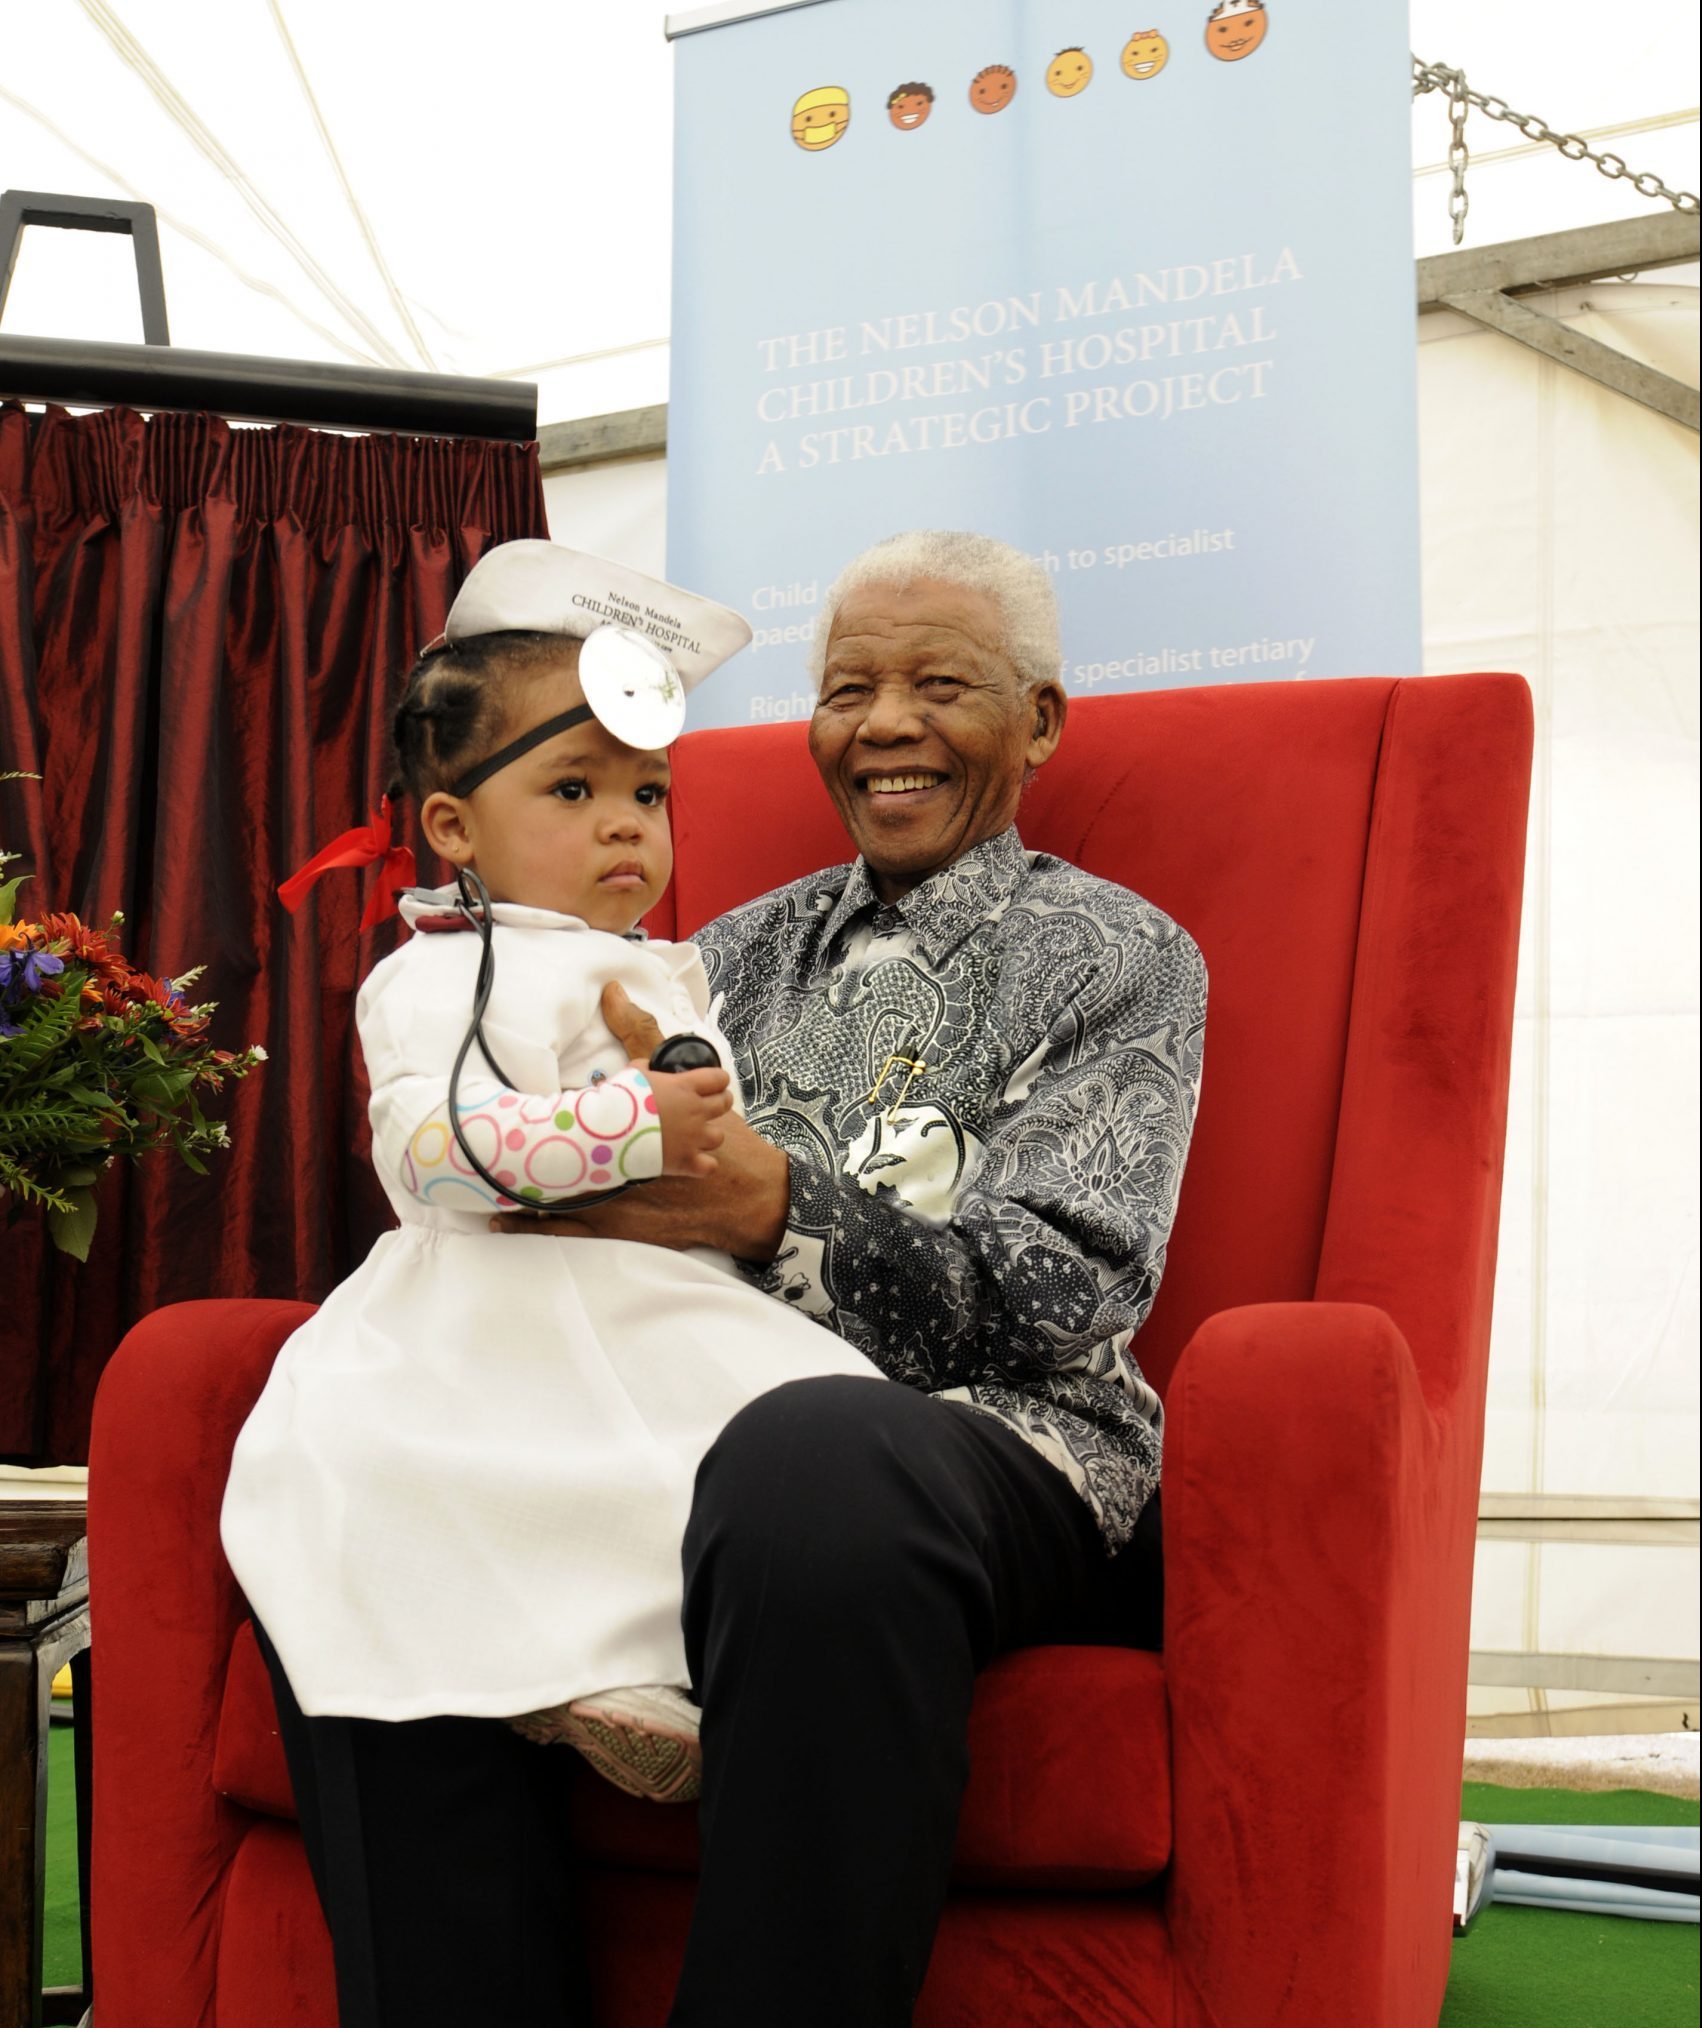 Des traitements médicaux pour les enfants d’Afrique du Sud, en collaboration avec l’hôpital pour enfants Nelson Mandela